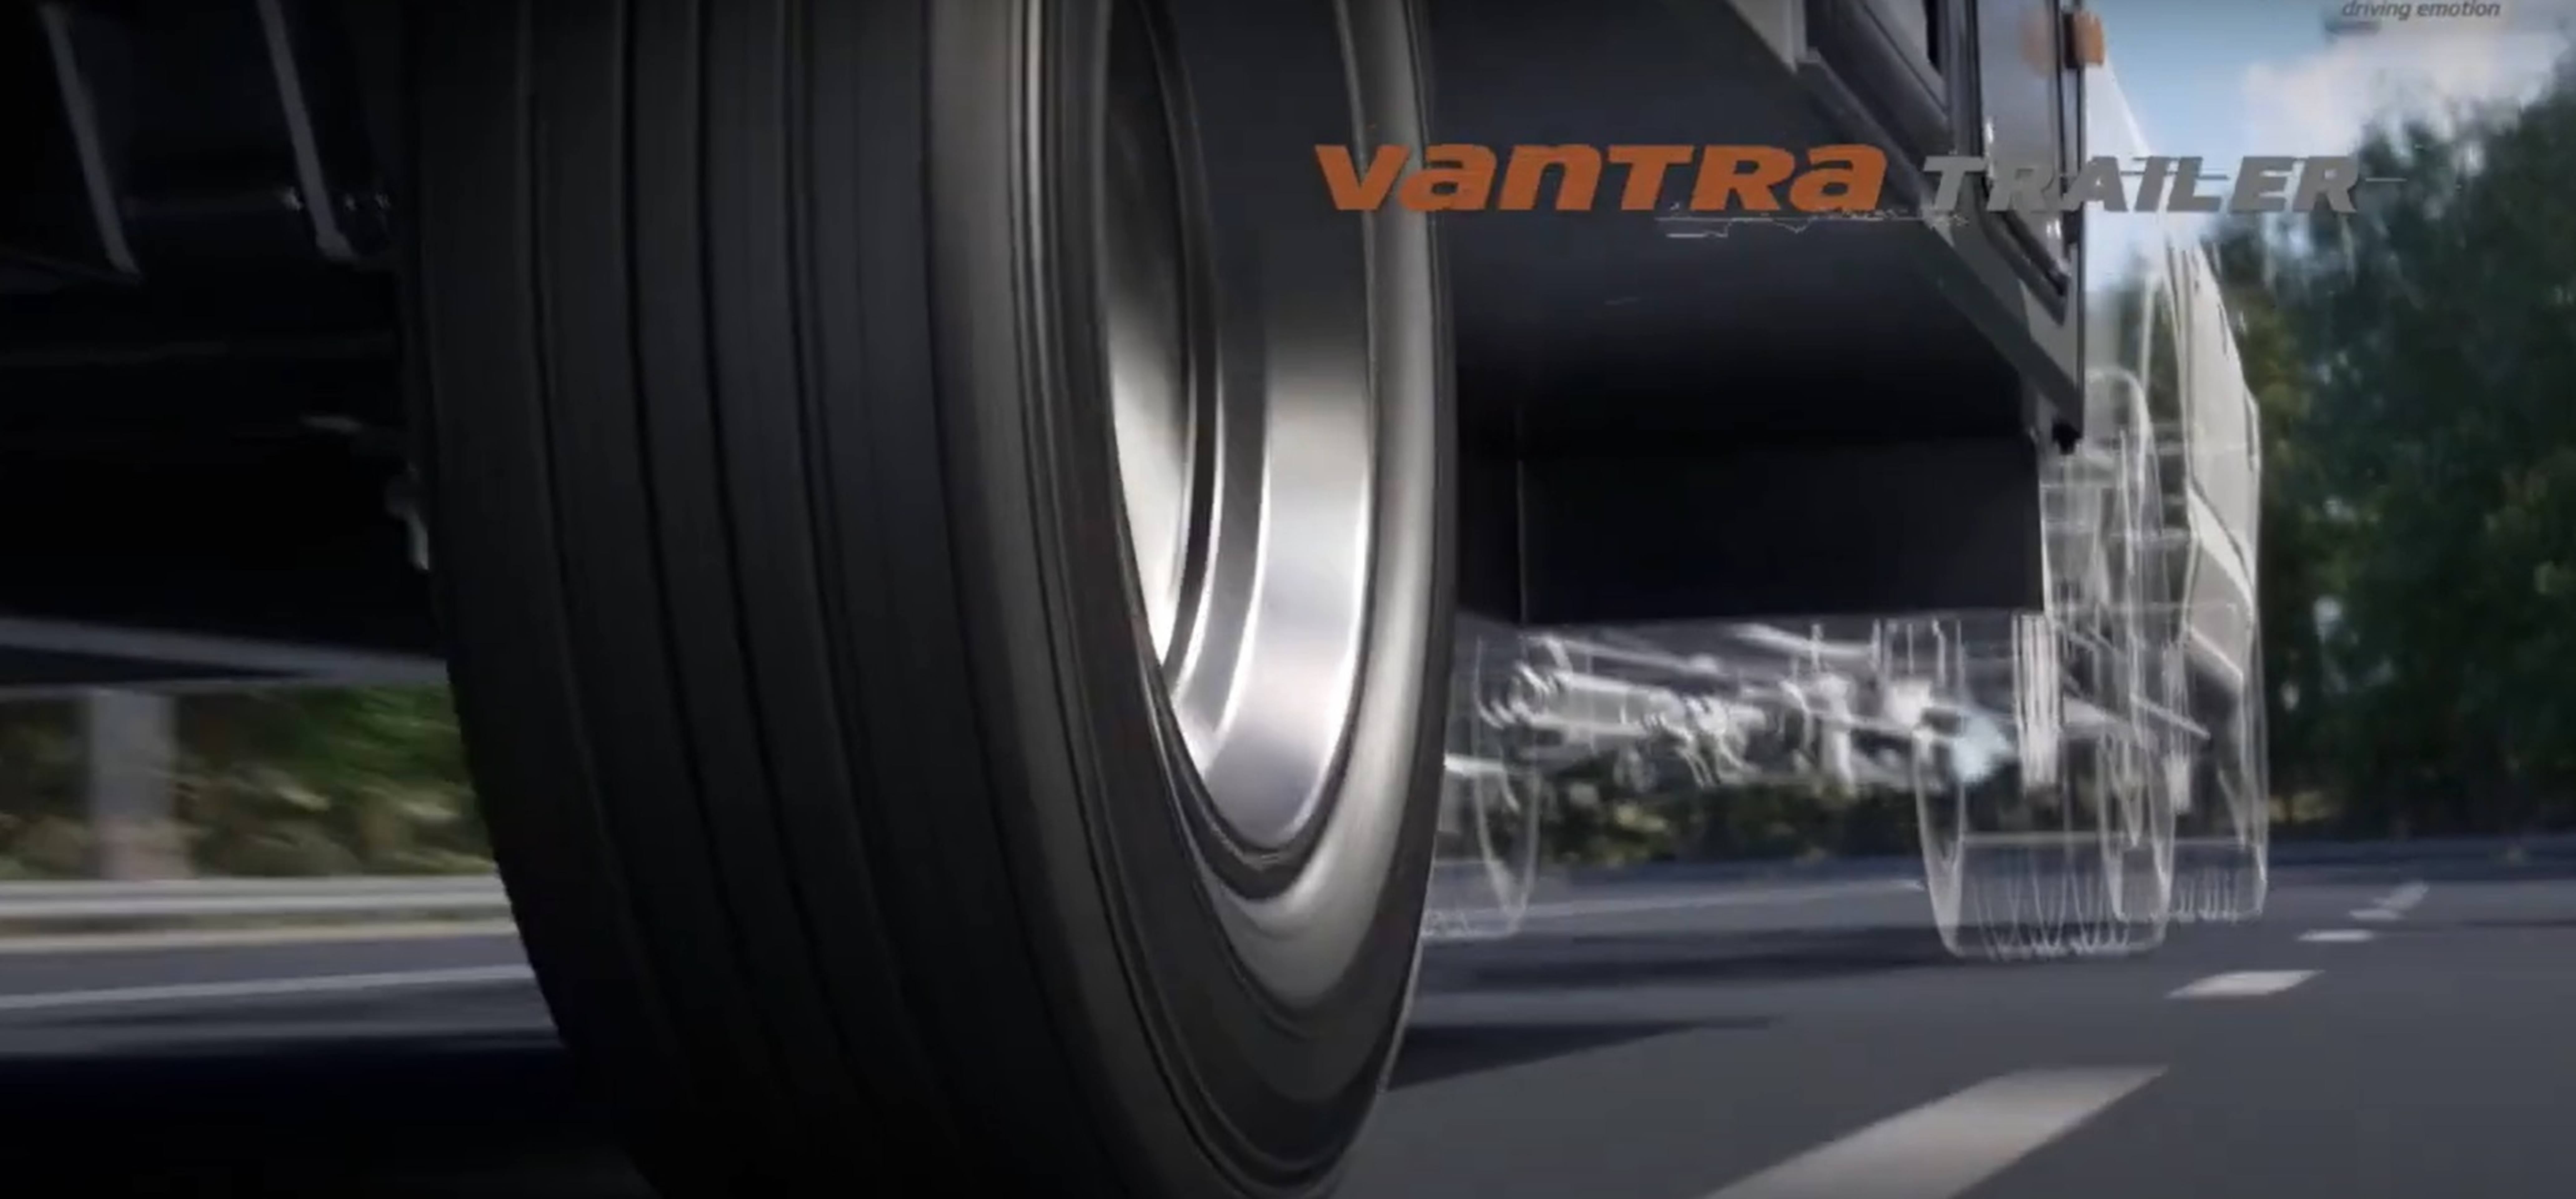 Hankook Vantra Trailer tires